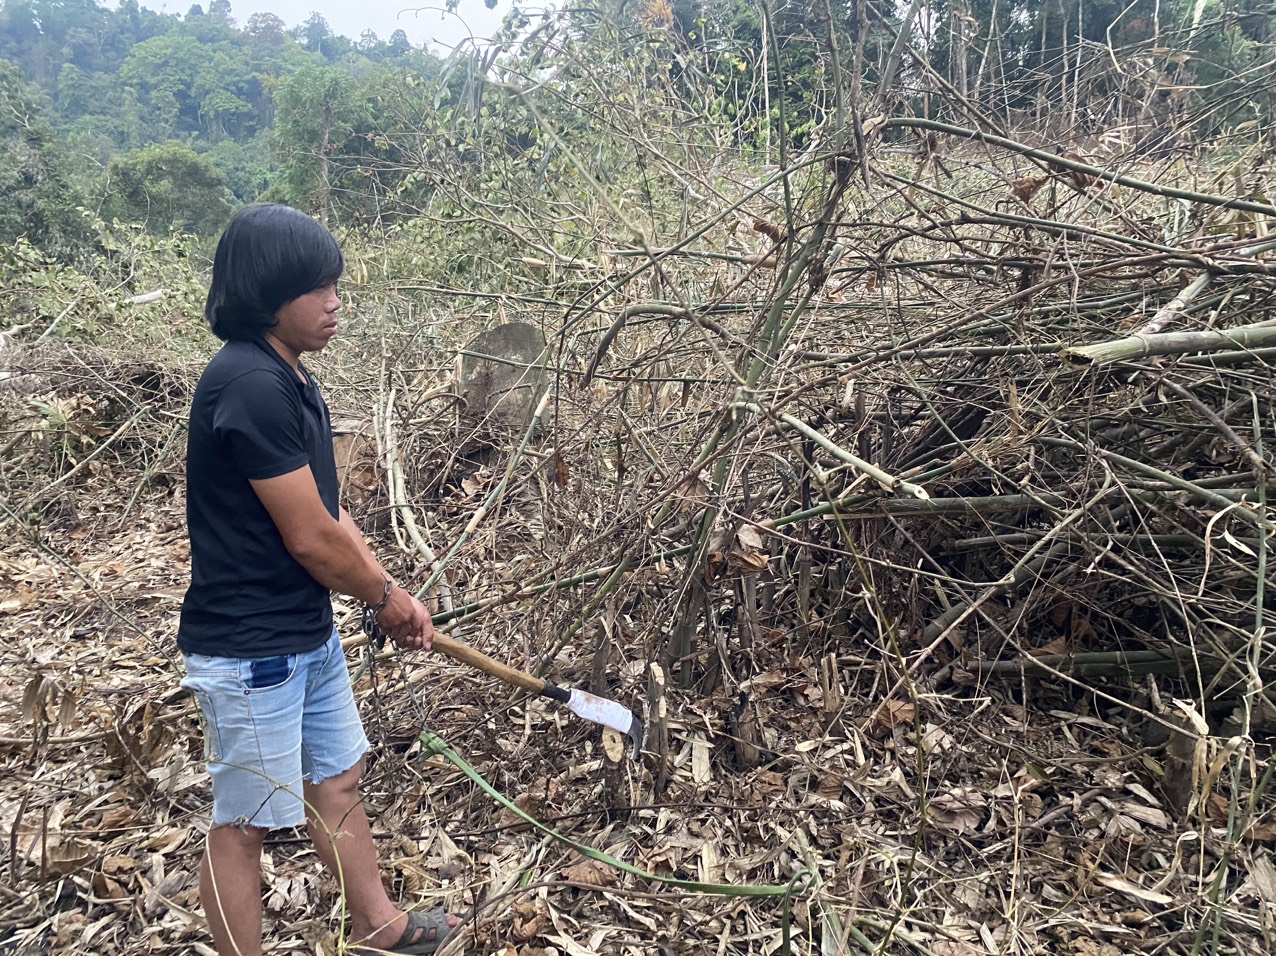 Tạm giữ hình sự 6 đối tượng vụ phá gần 1ha rừng, ủy ban tỉnh chỉ đạo điều tra, xử lý nghiêm - Ảnh 3.